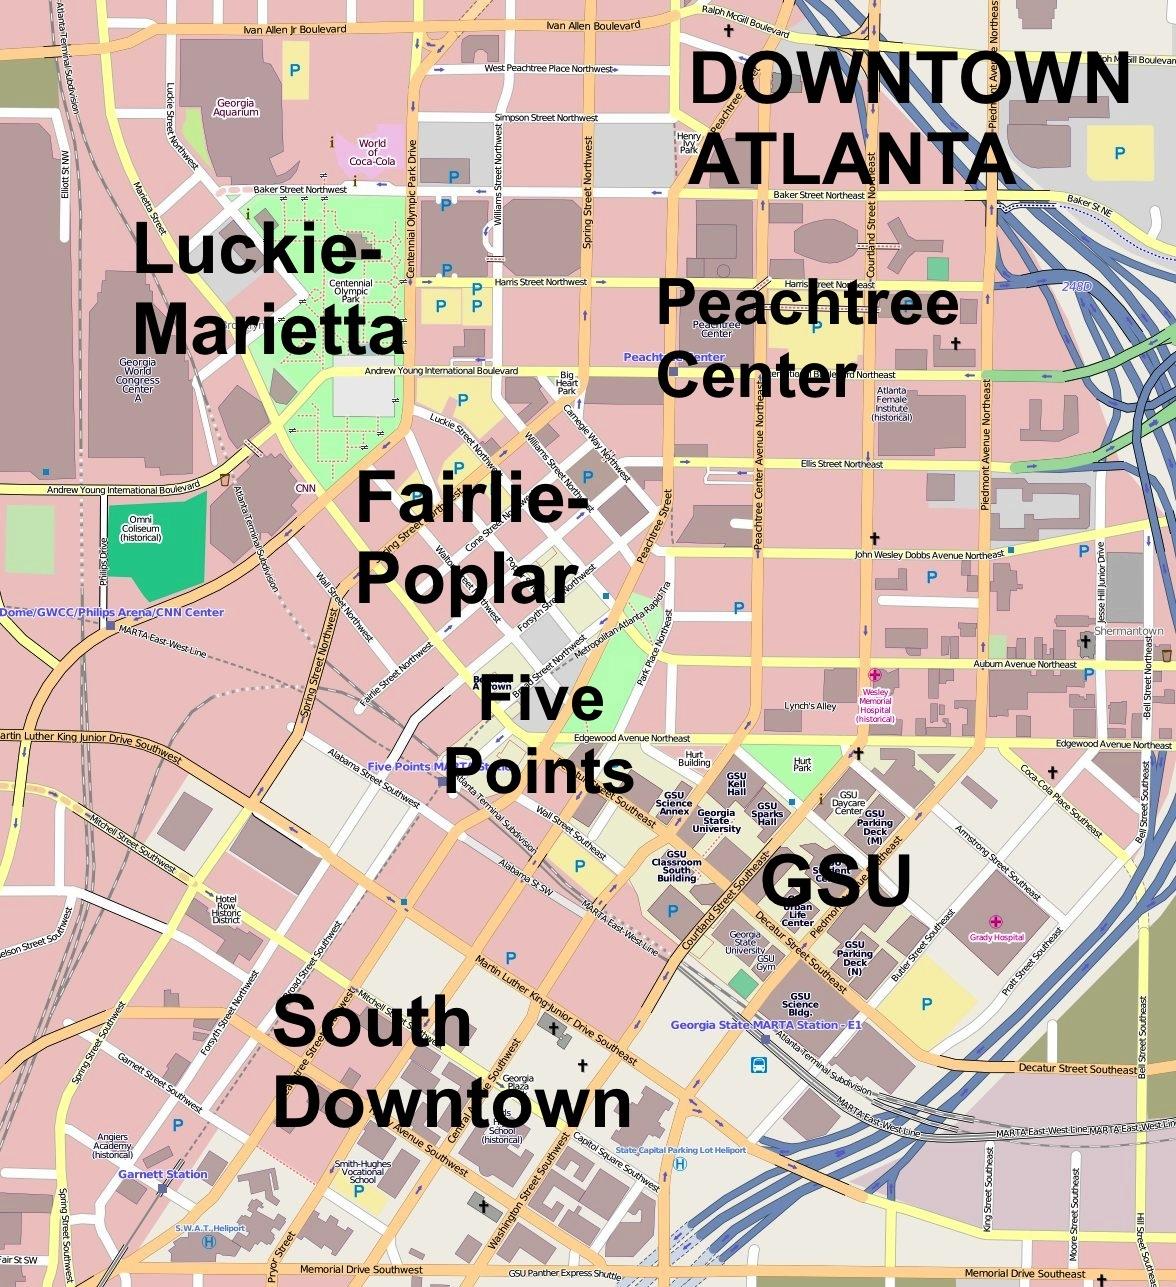 Map Of Midtown Atlanta Ga 